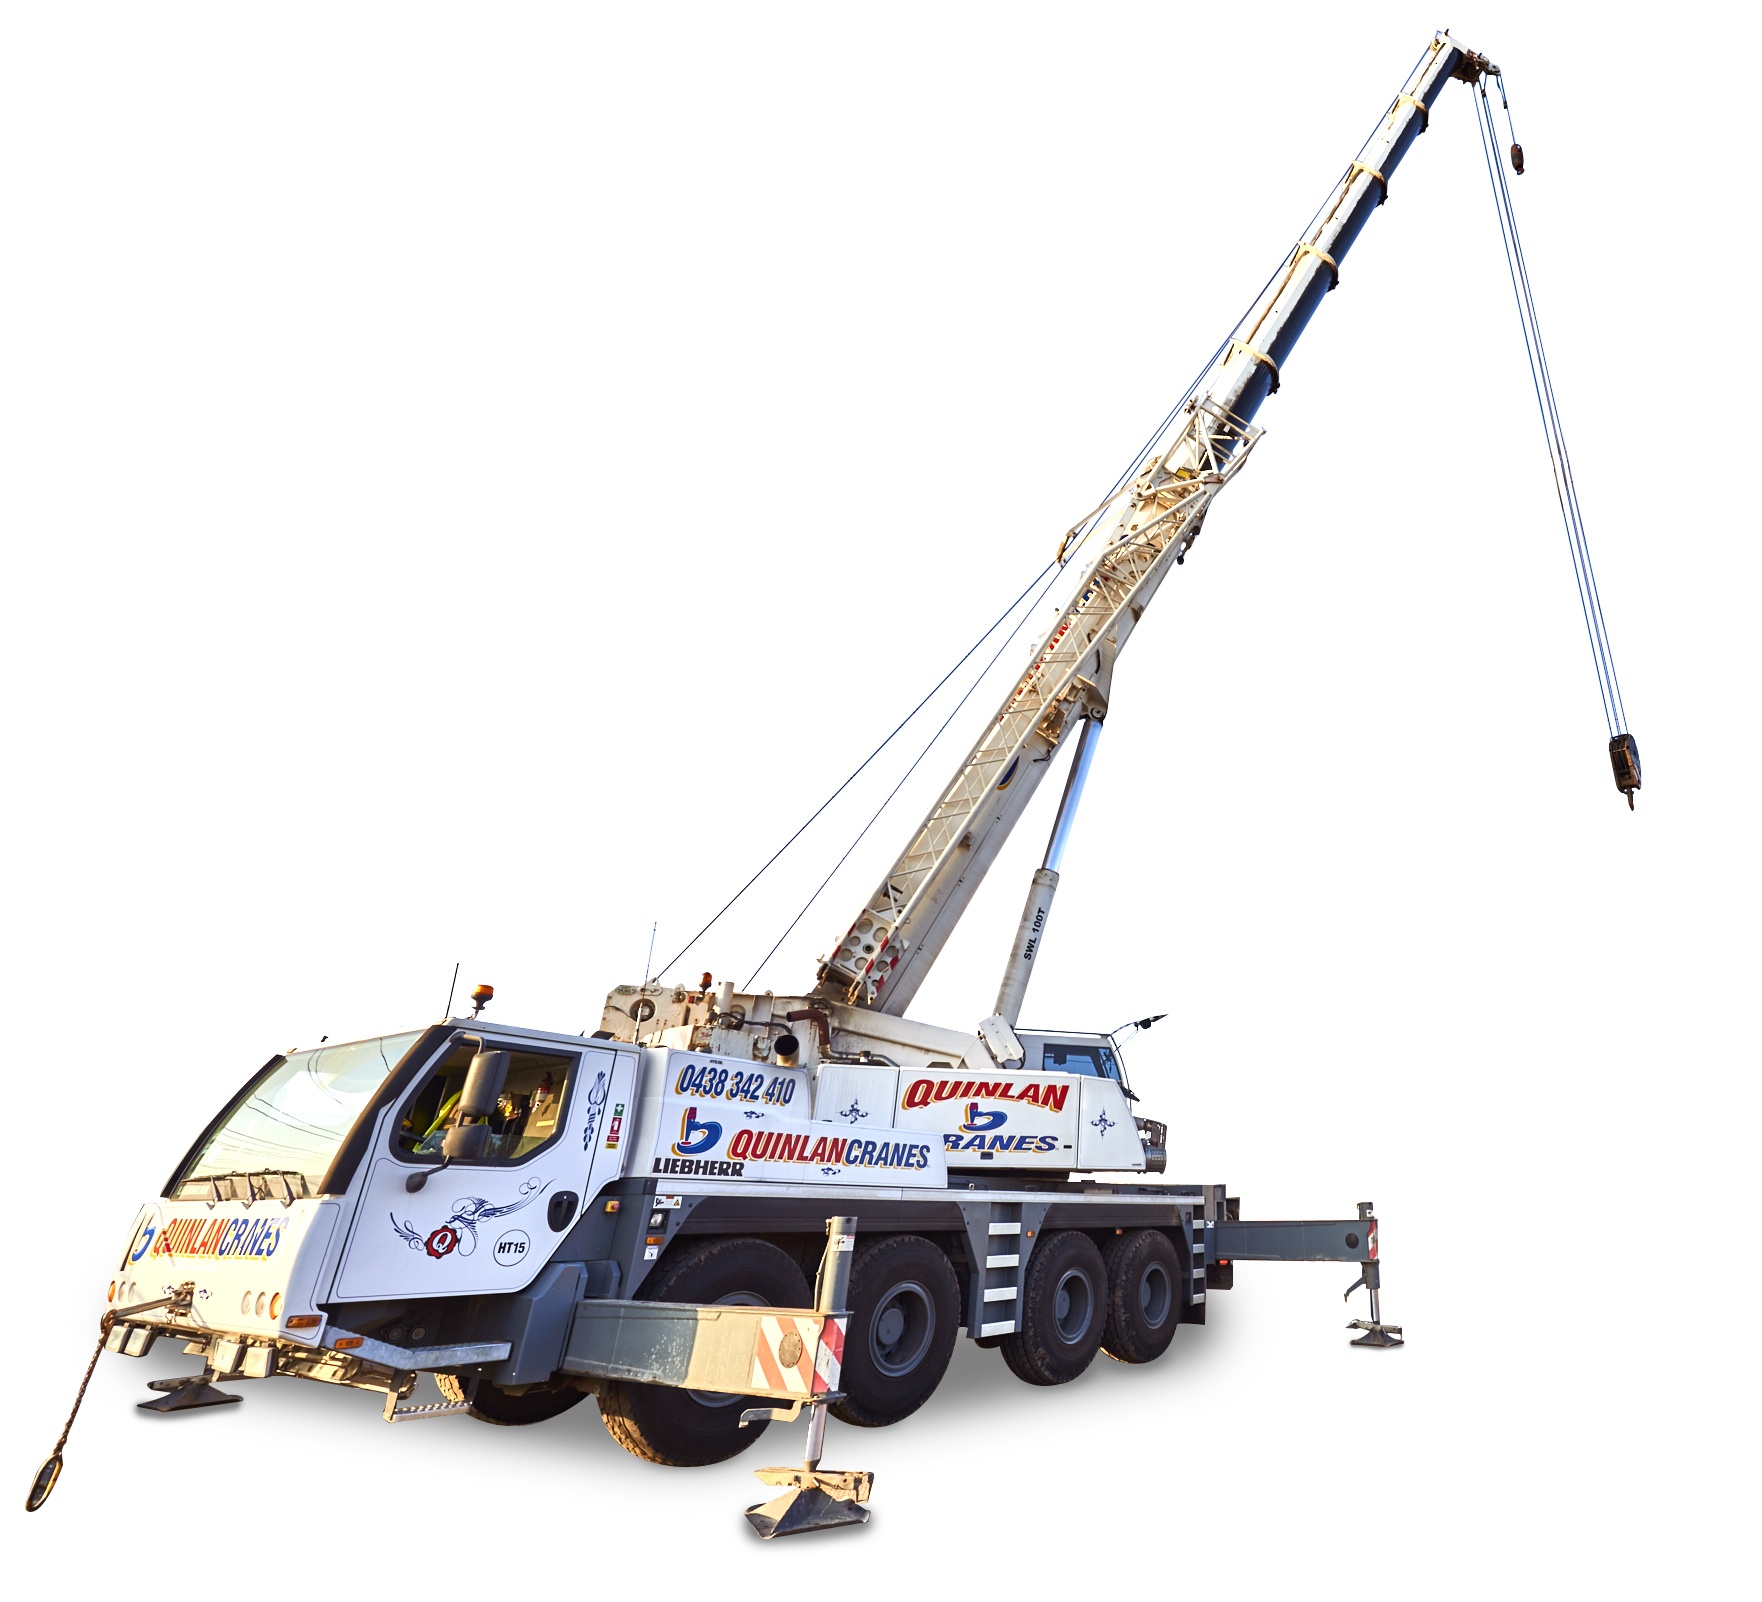 100 ton crane for hire